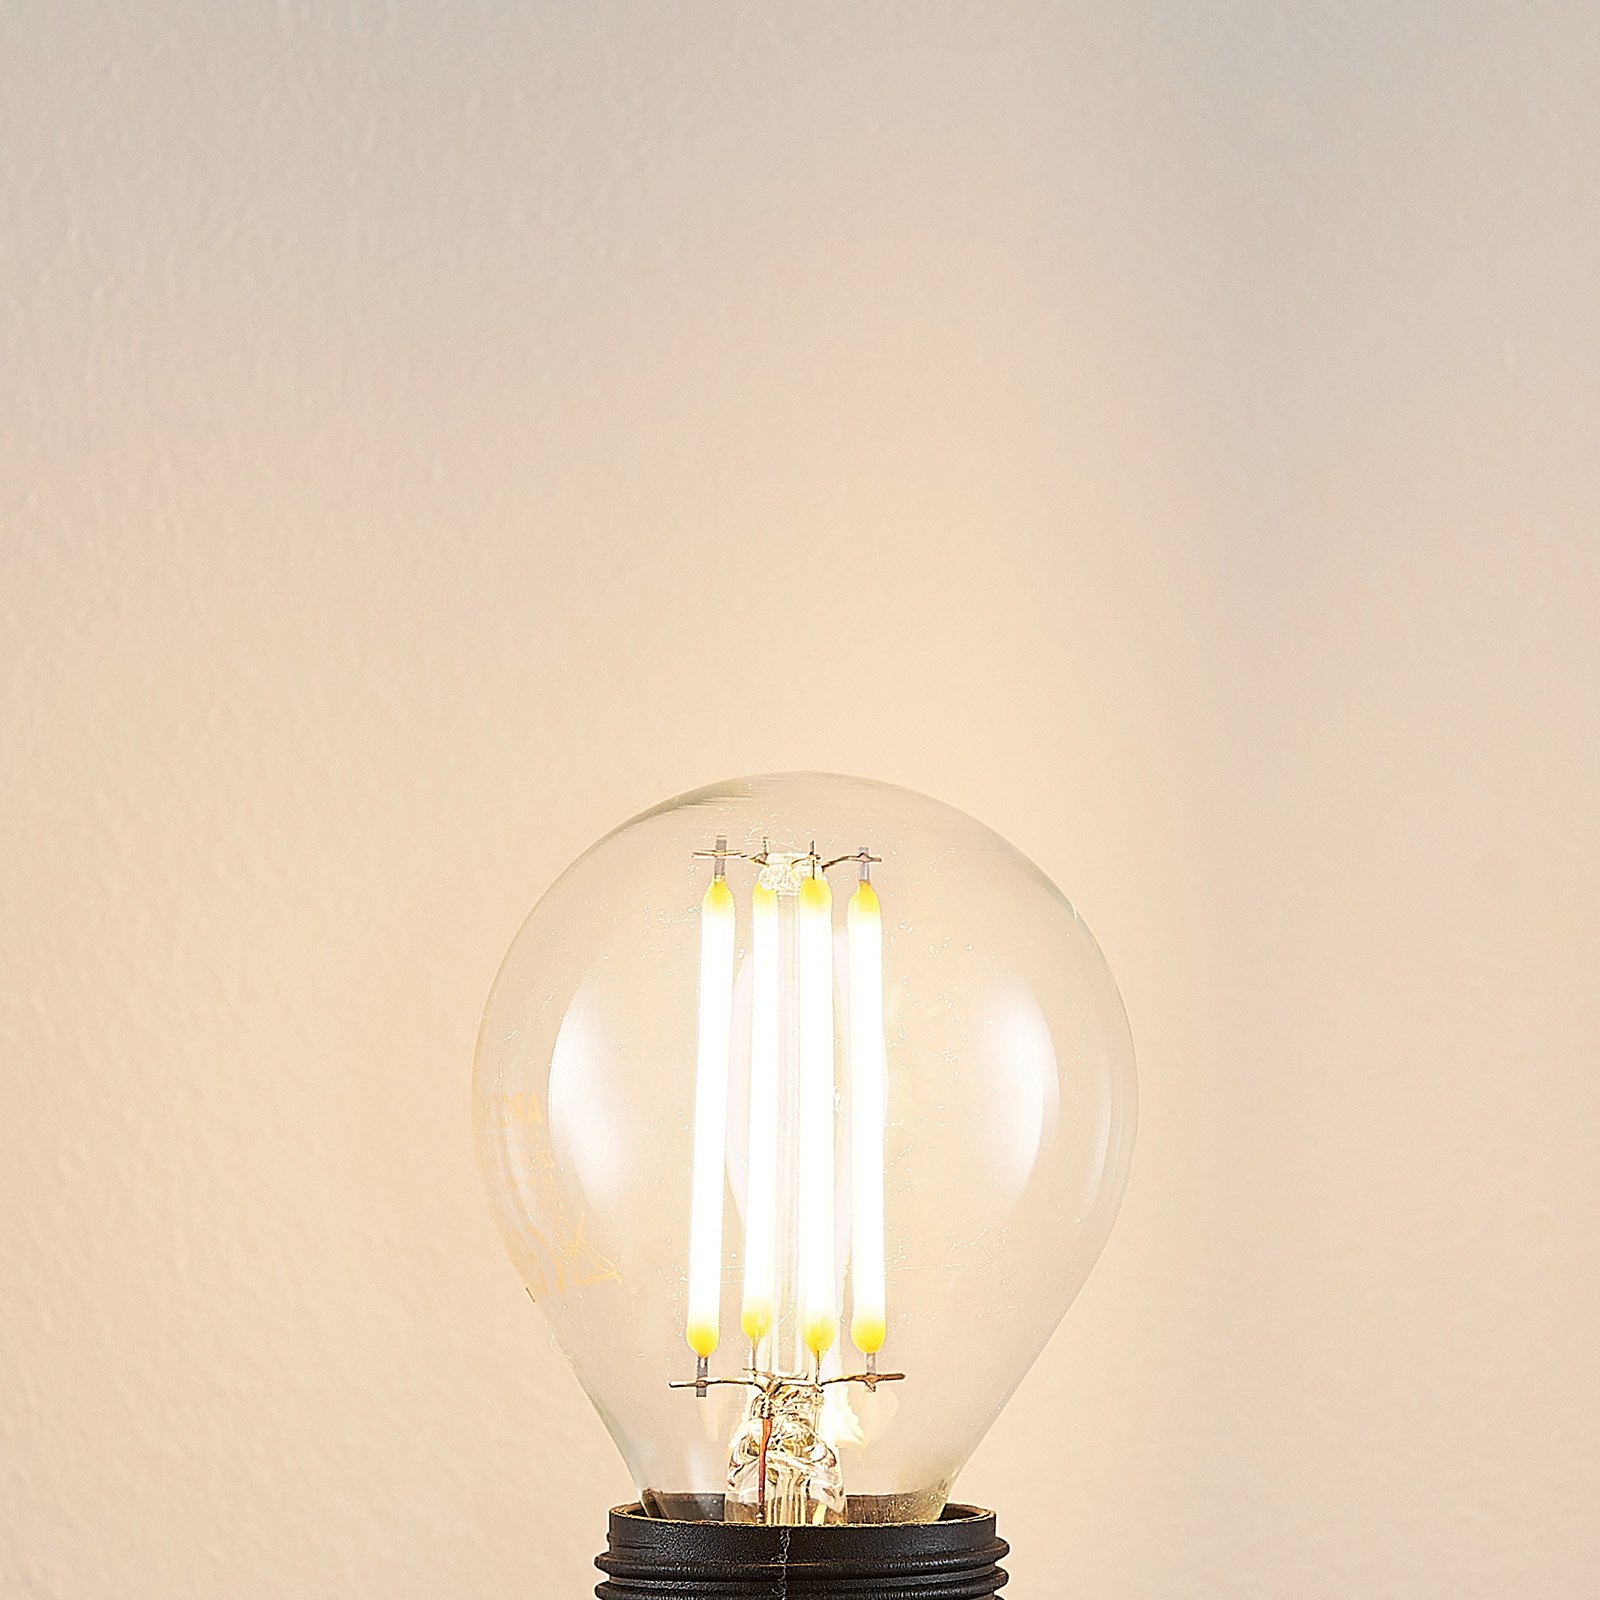 LED-Lampe E14 P45 4W 2.700K klar 3-Step-Dimmer